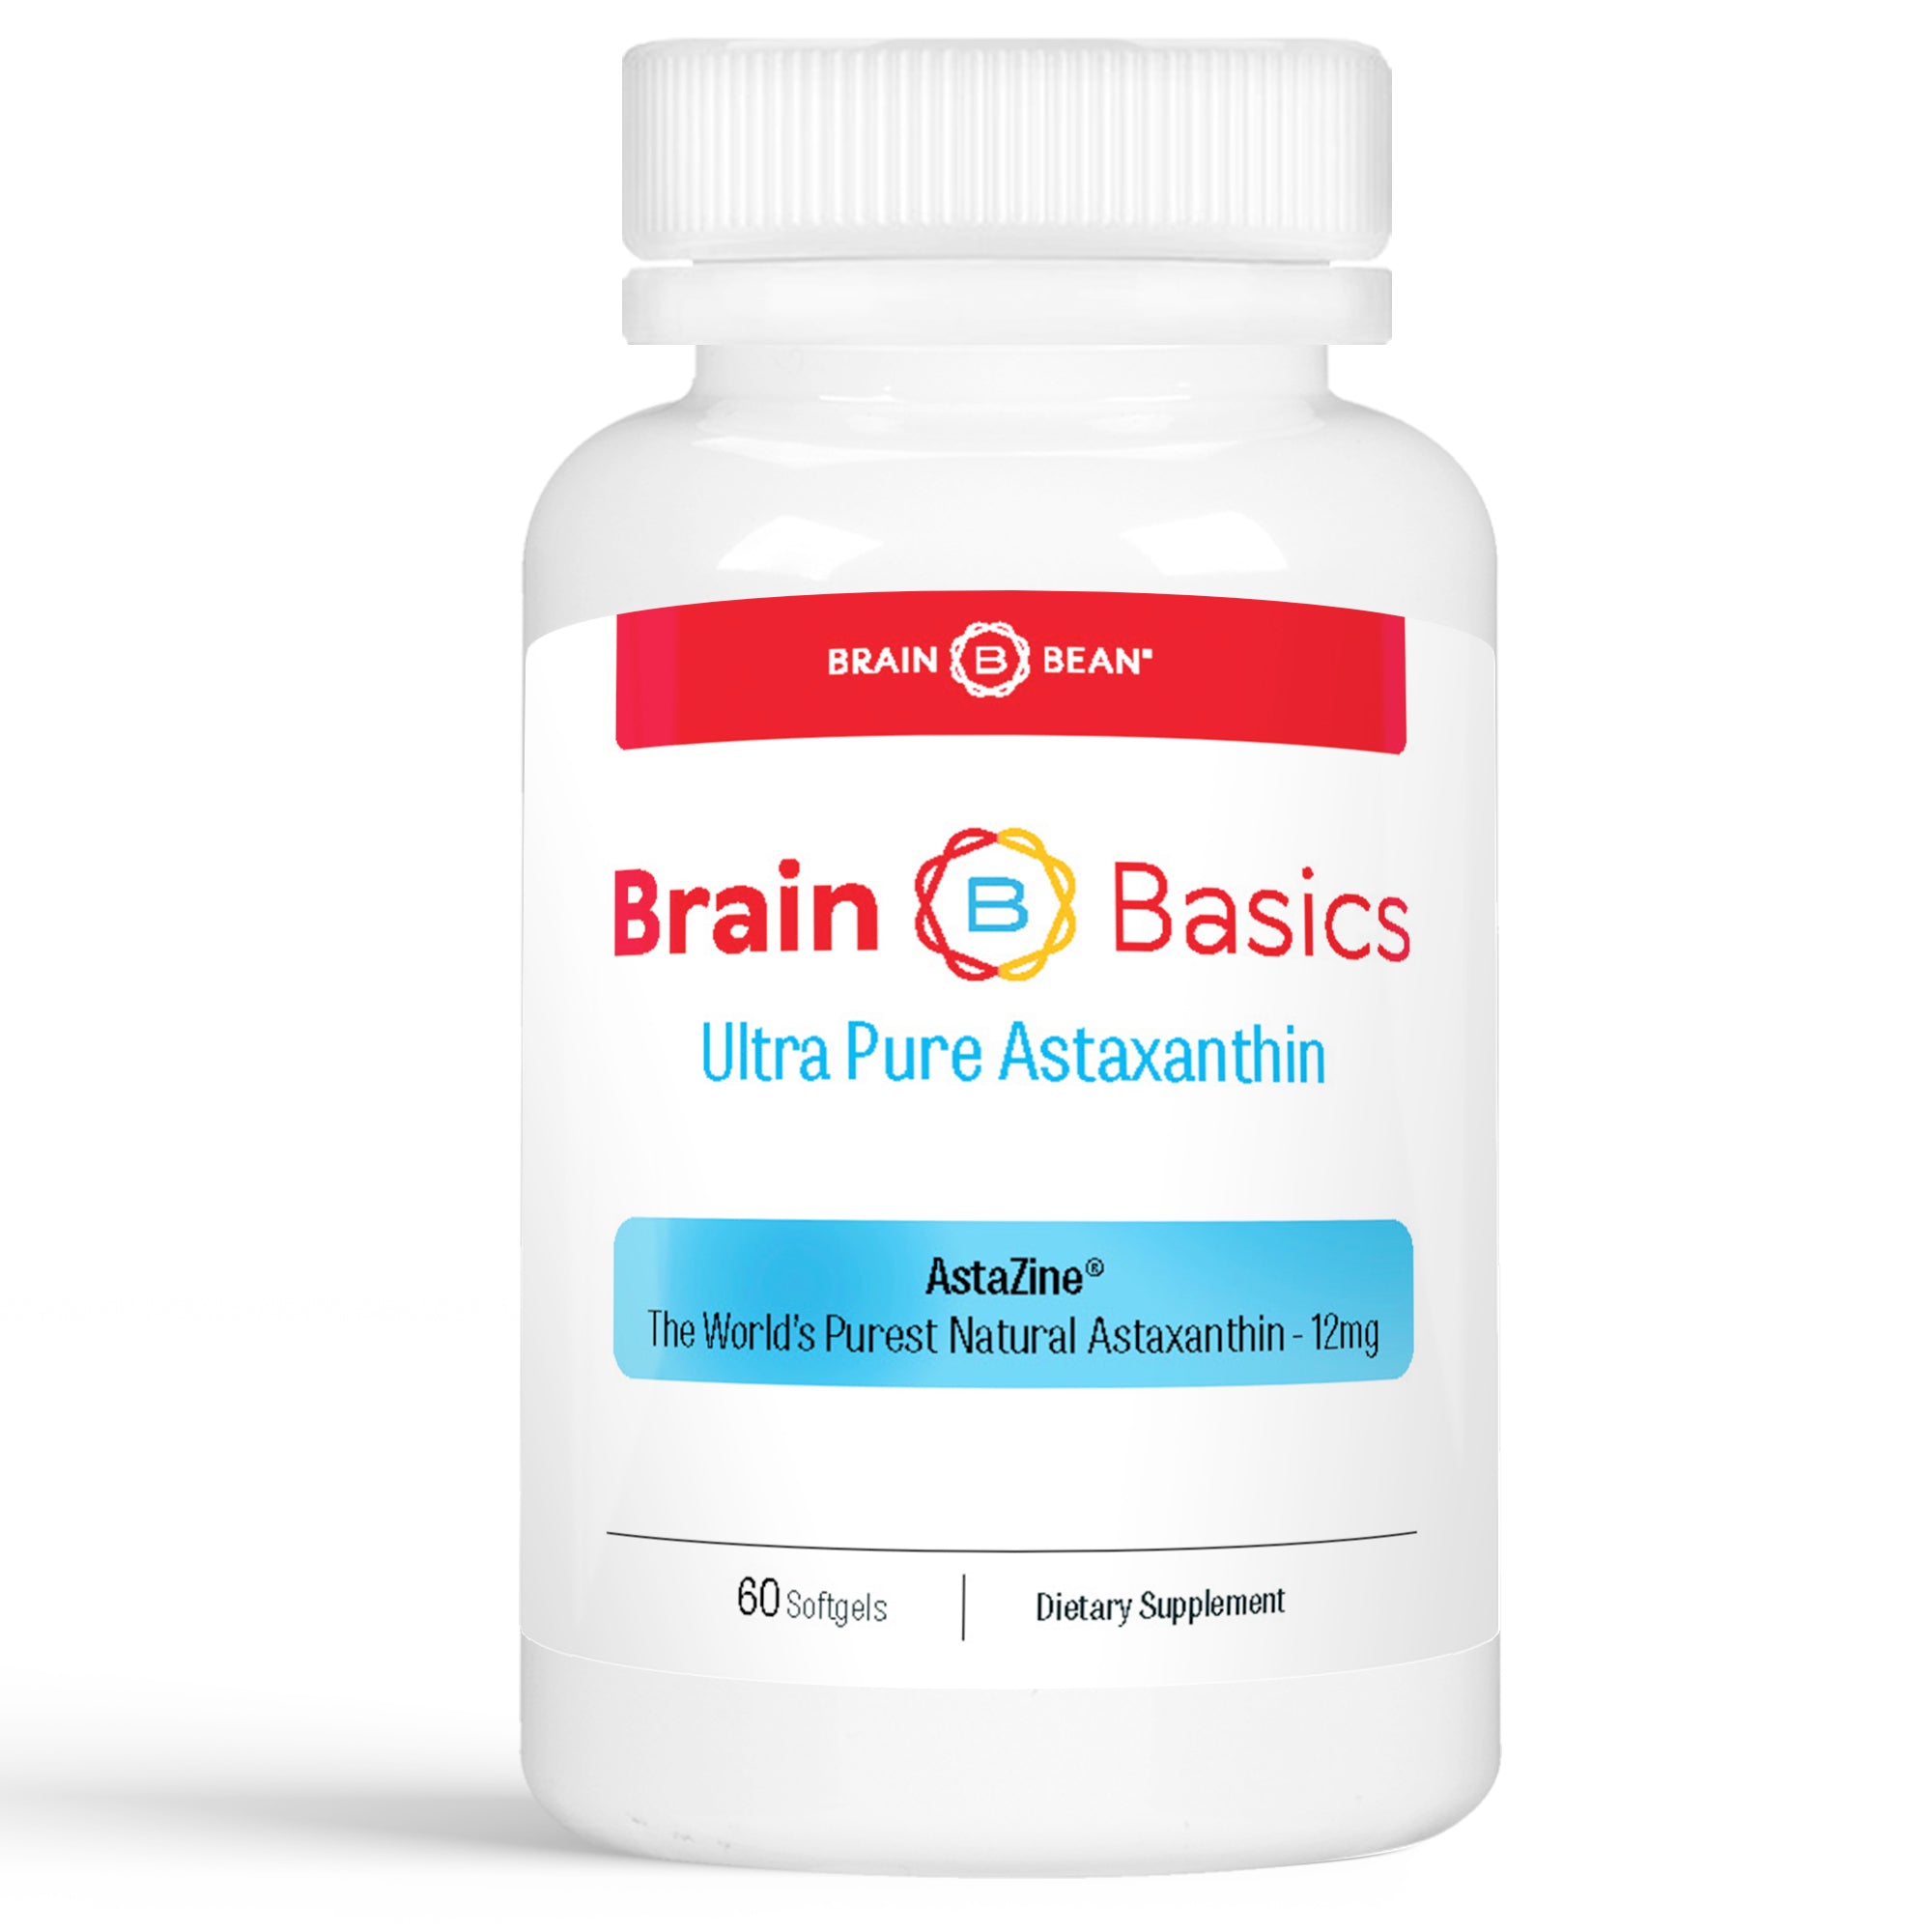 Brain Basics: Ultra Pure Astaxanthin